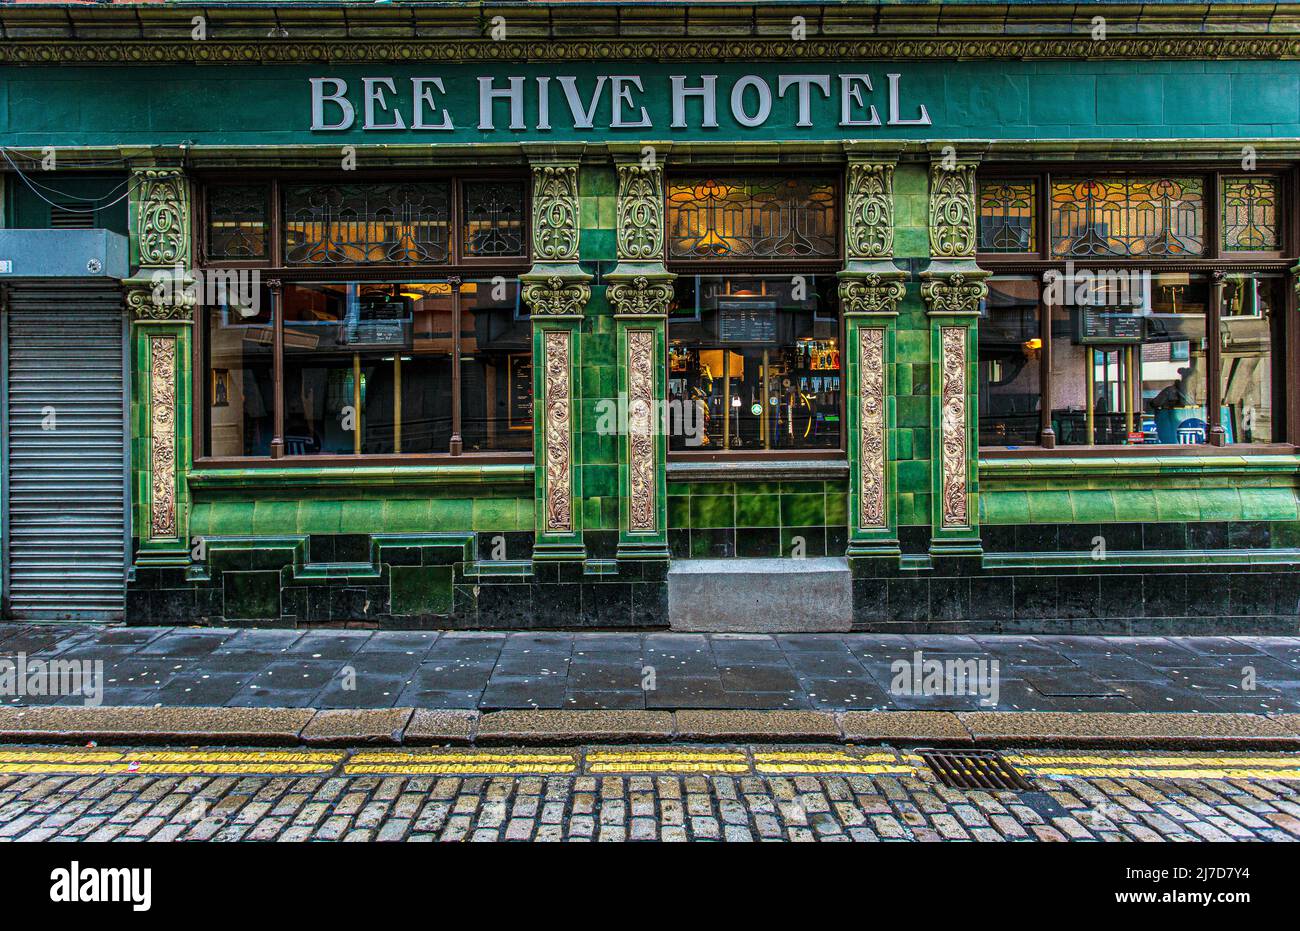 L'esterno della casa pubblica del Beehive Hotel si trova di fronte a piastrelle smaltate verdi e gialle. High Bridge , Newcastle upon Tyne, Inghilterra. Foto Stock